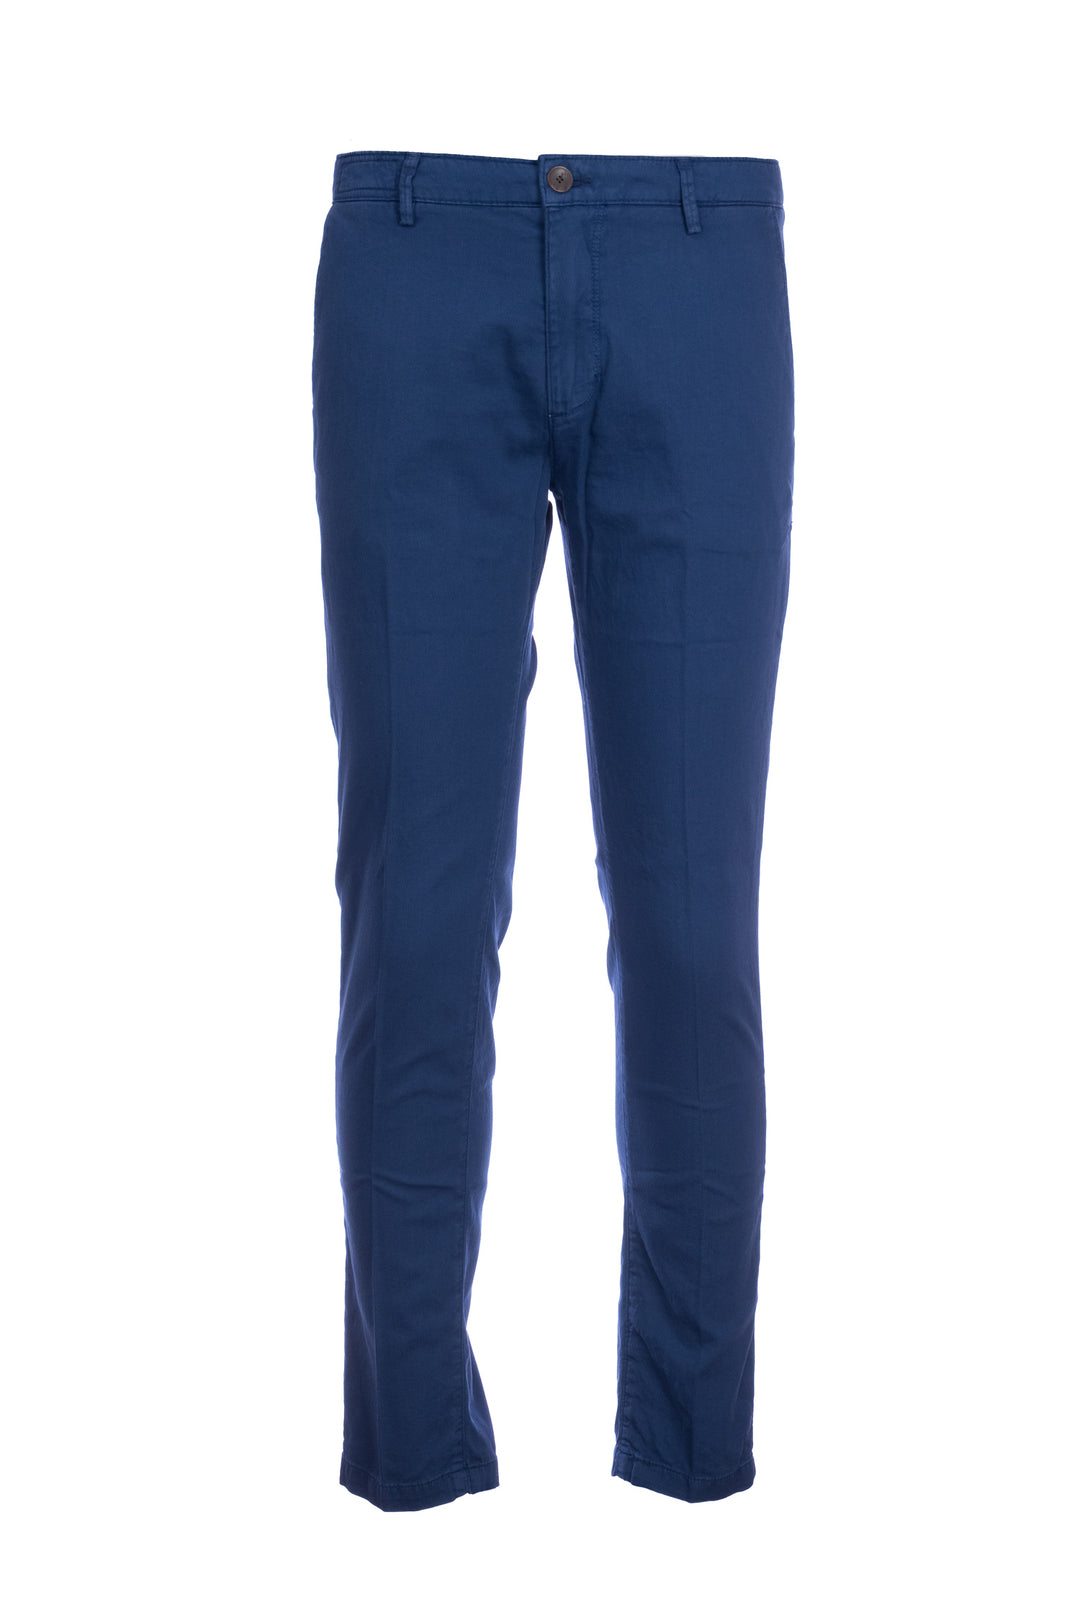 YAN SIMMON Pantalone blu in gabardina di cotone elasticizzato - Mancinelli 1954